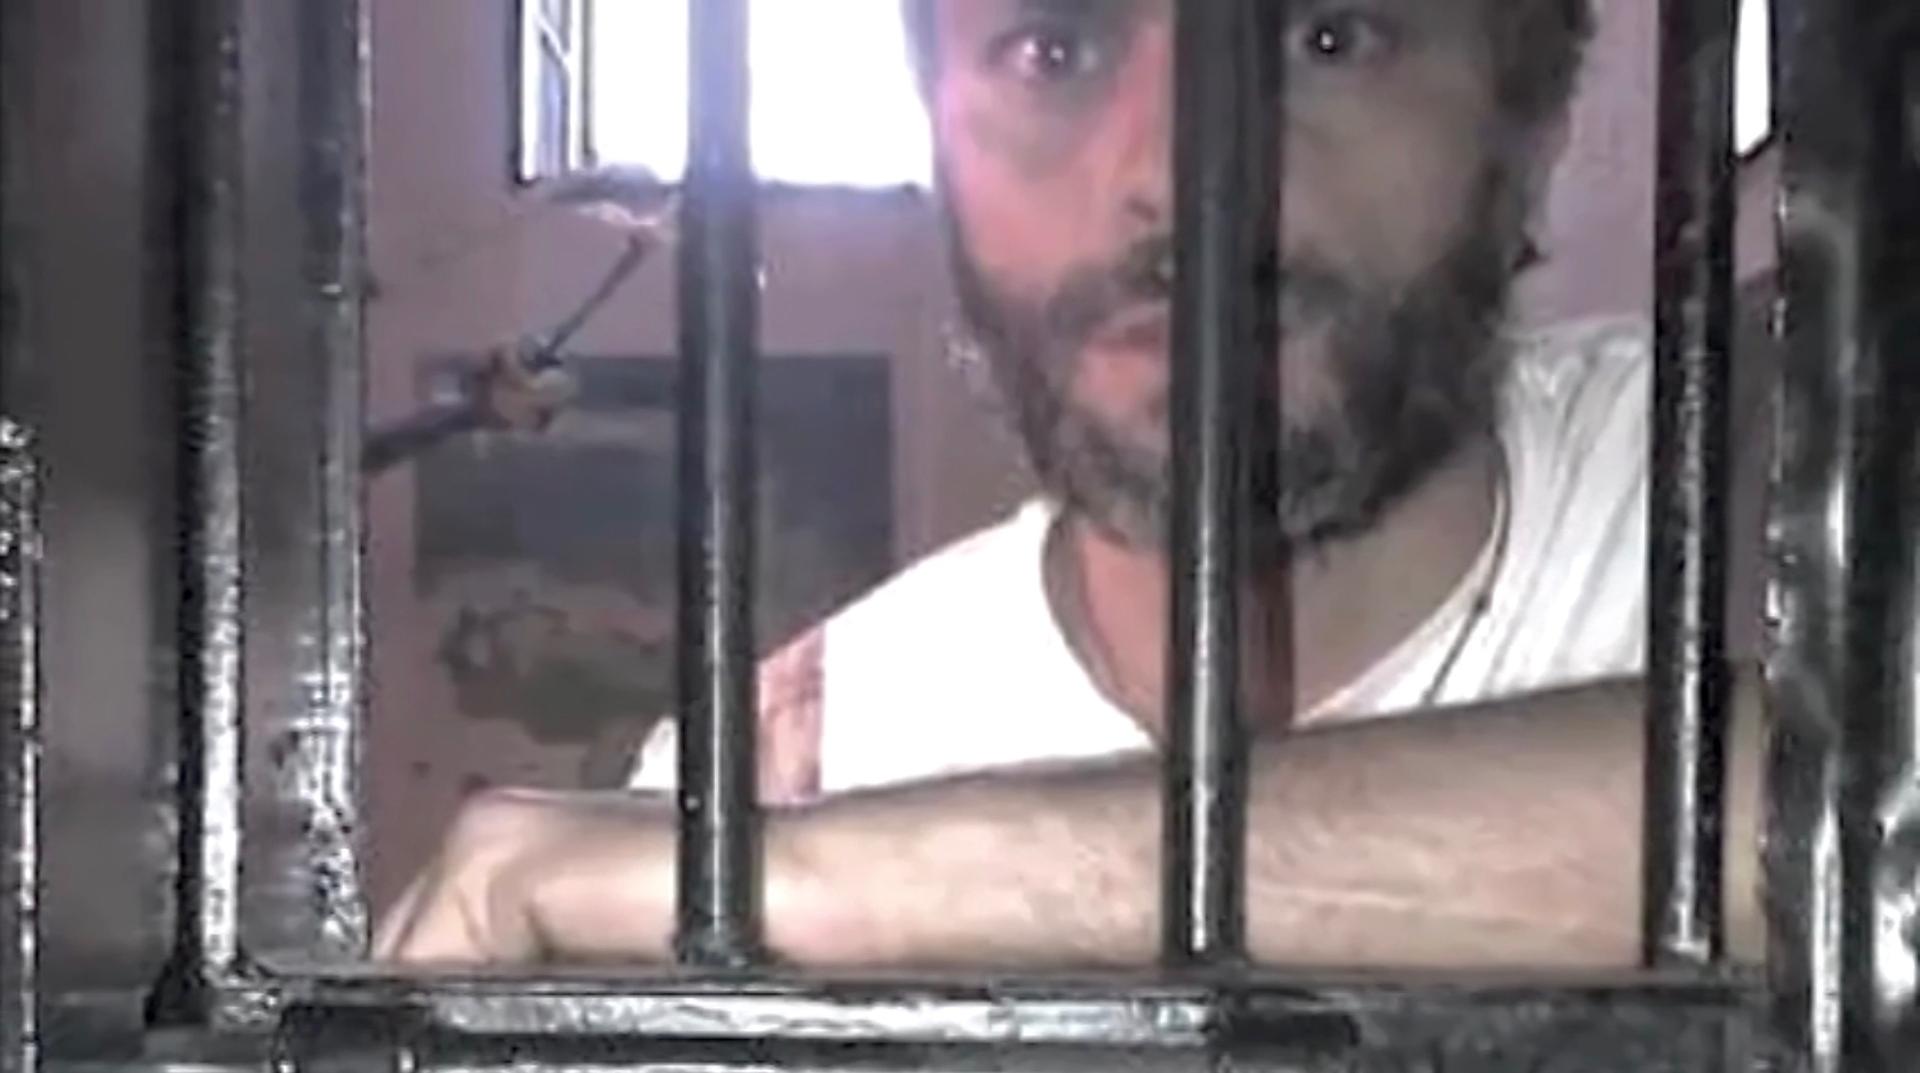 Leopoldo López in jail